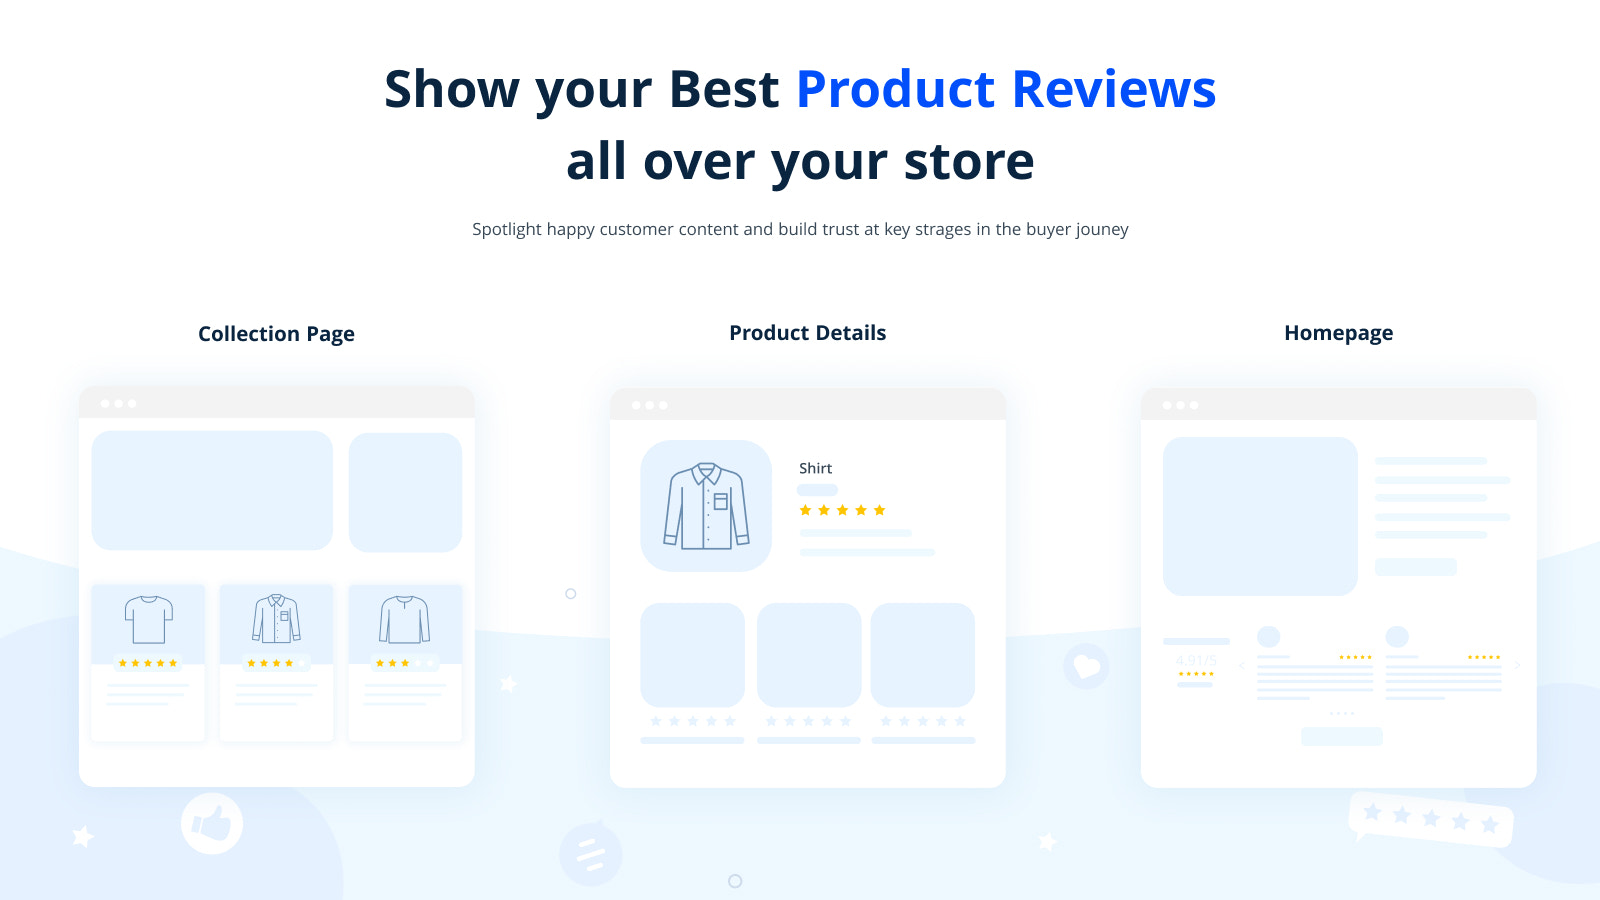 Mostre suas melhores avaliações de produtos em toda a sua loja